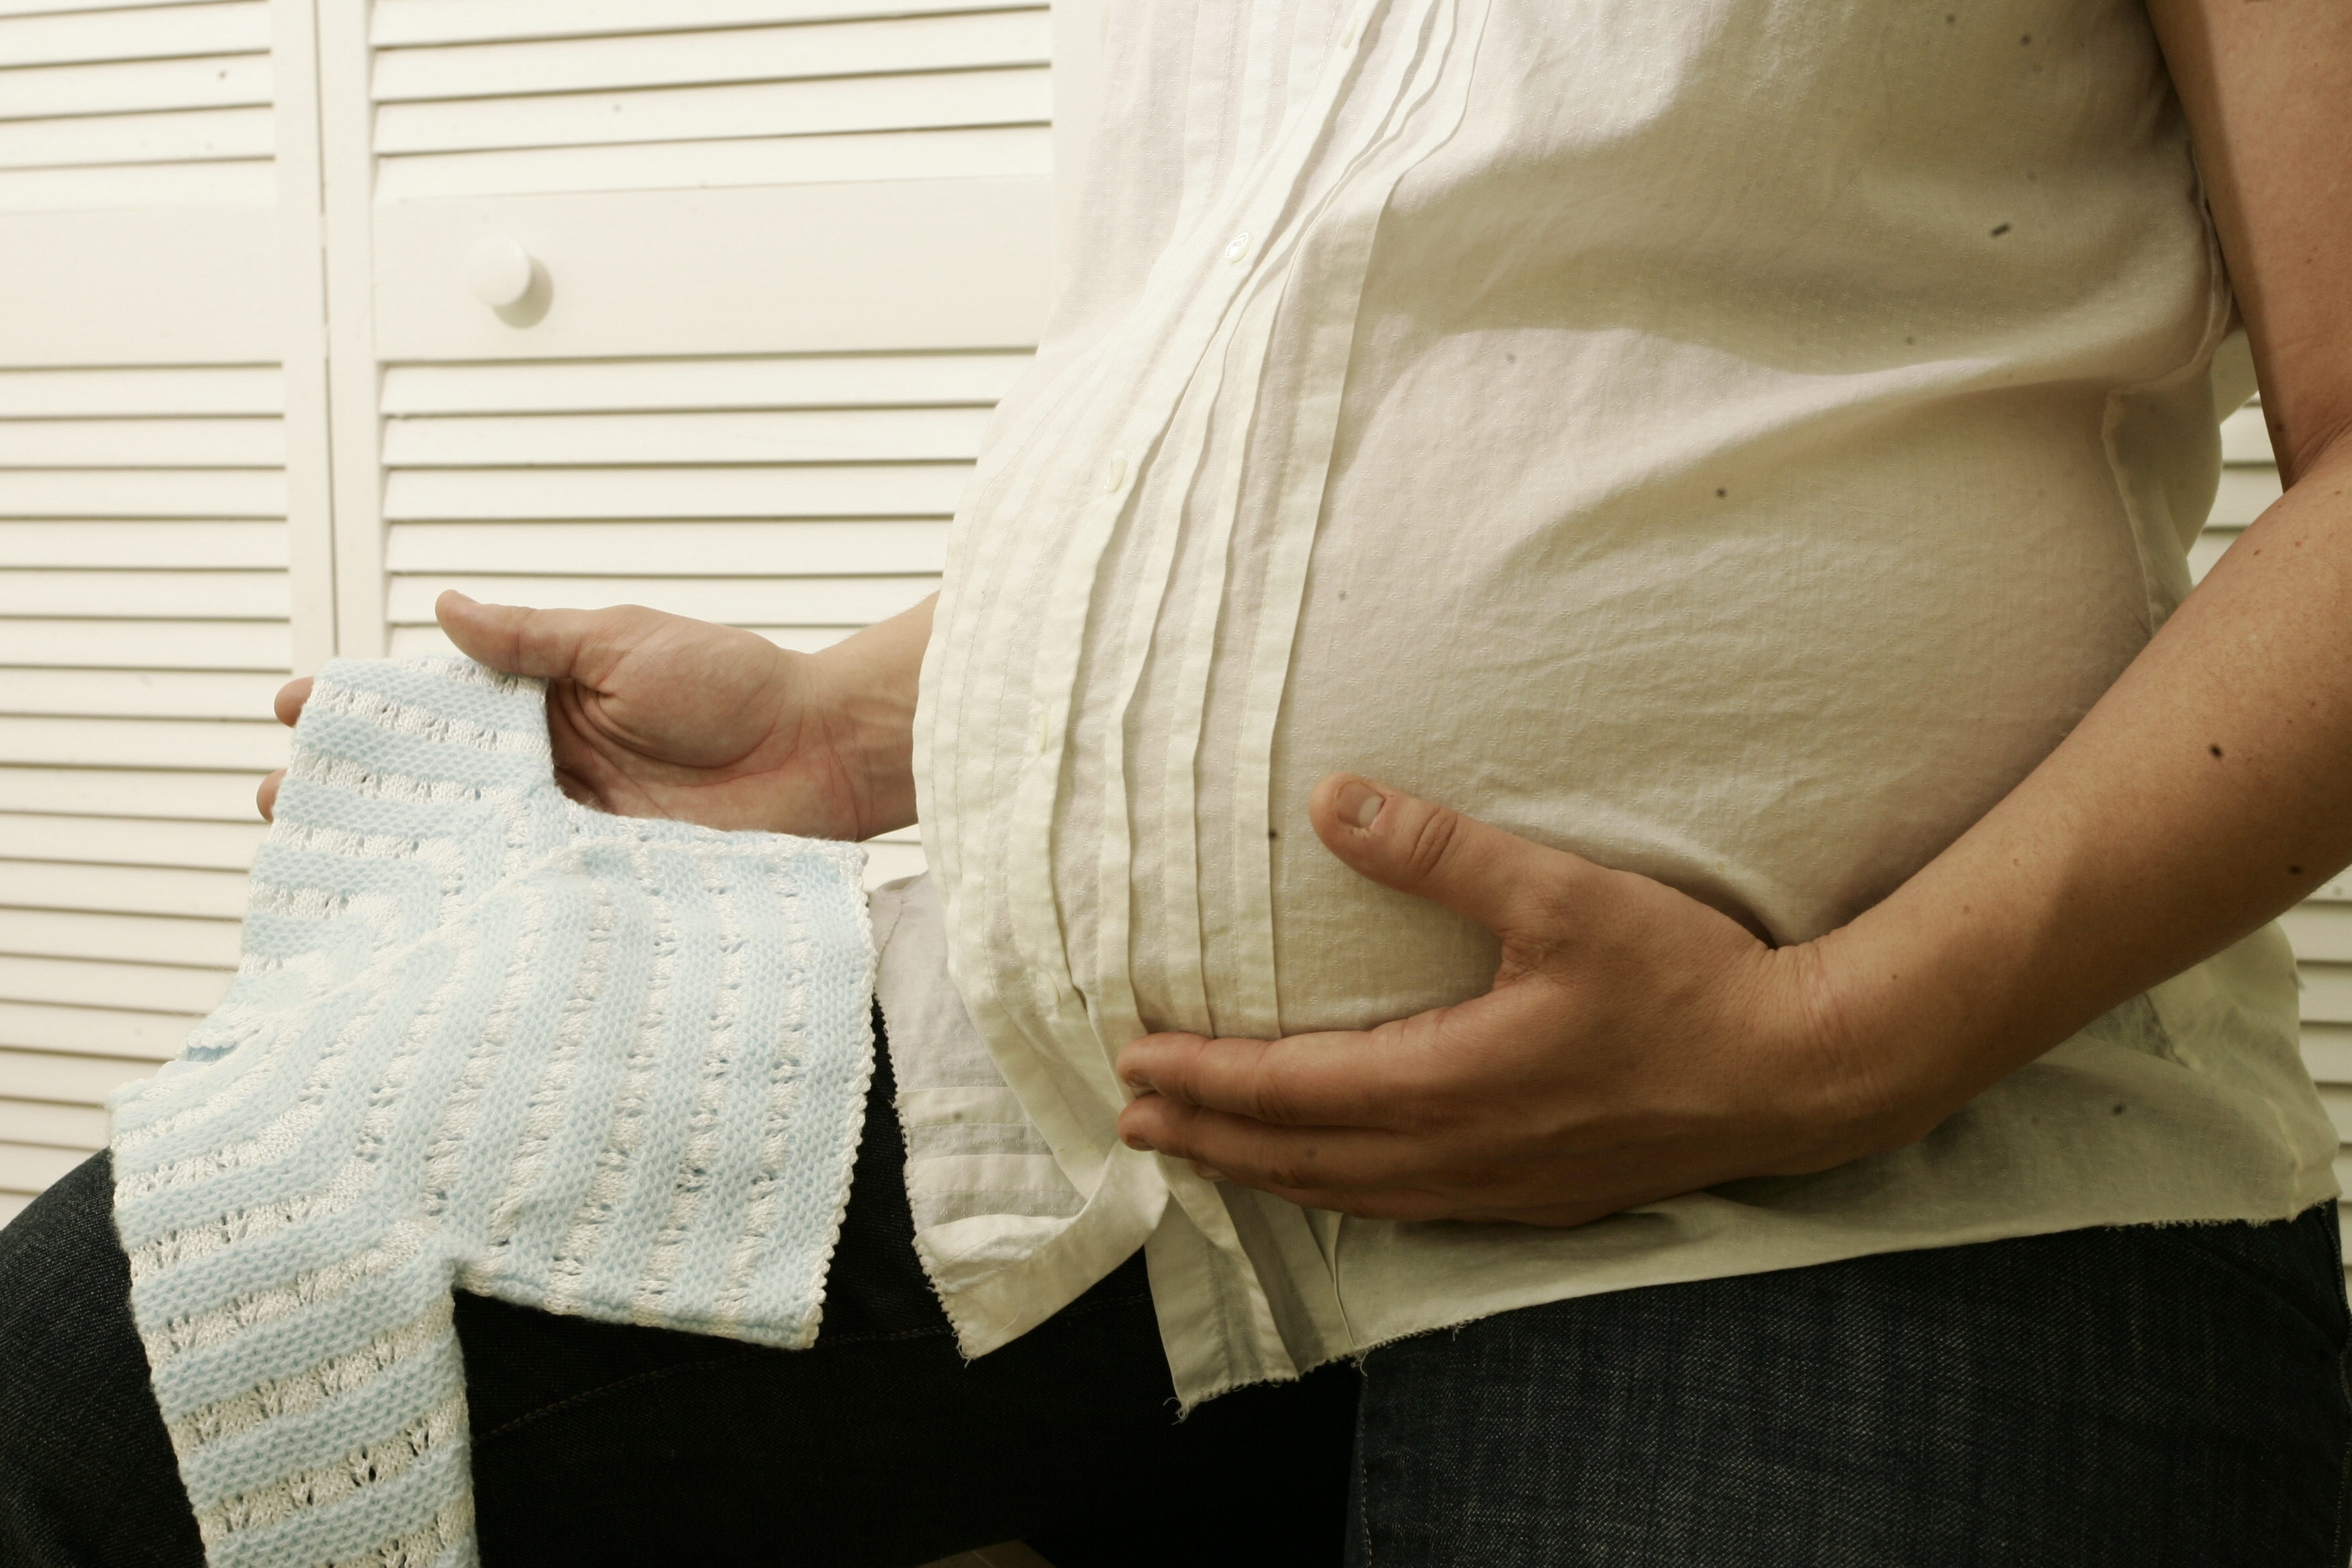 El 10% de las embarazadas pueden desarrollar diabetes gestacional. En la primer consulta, se debería hacer análisis de glucemia para detectarla tempranamente/EFE/Zayra Mo/Archivo
